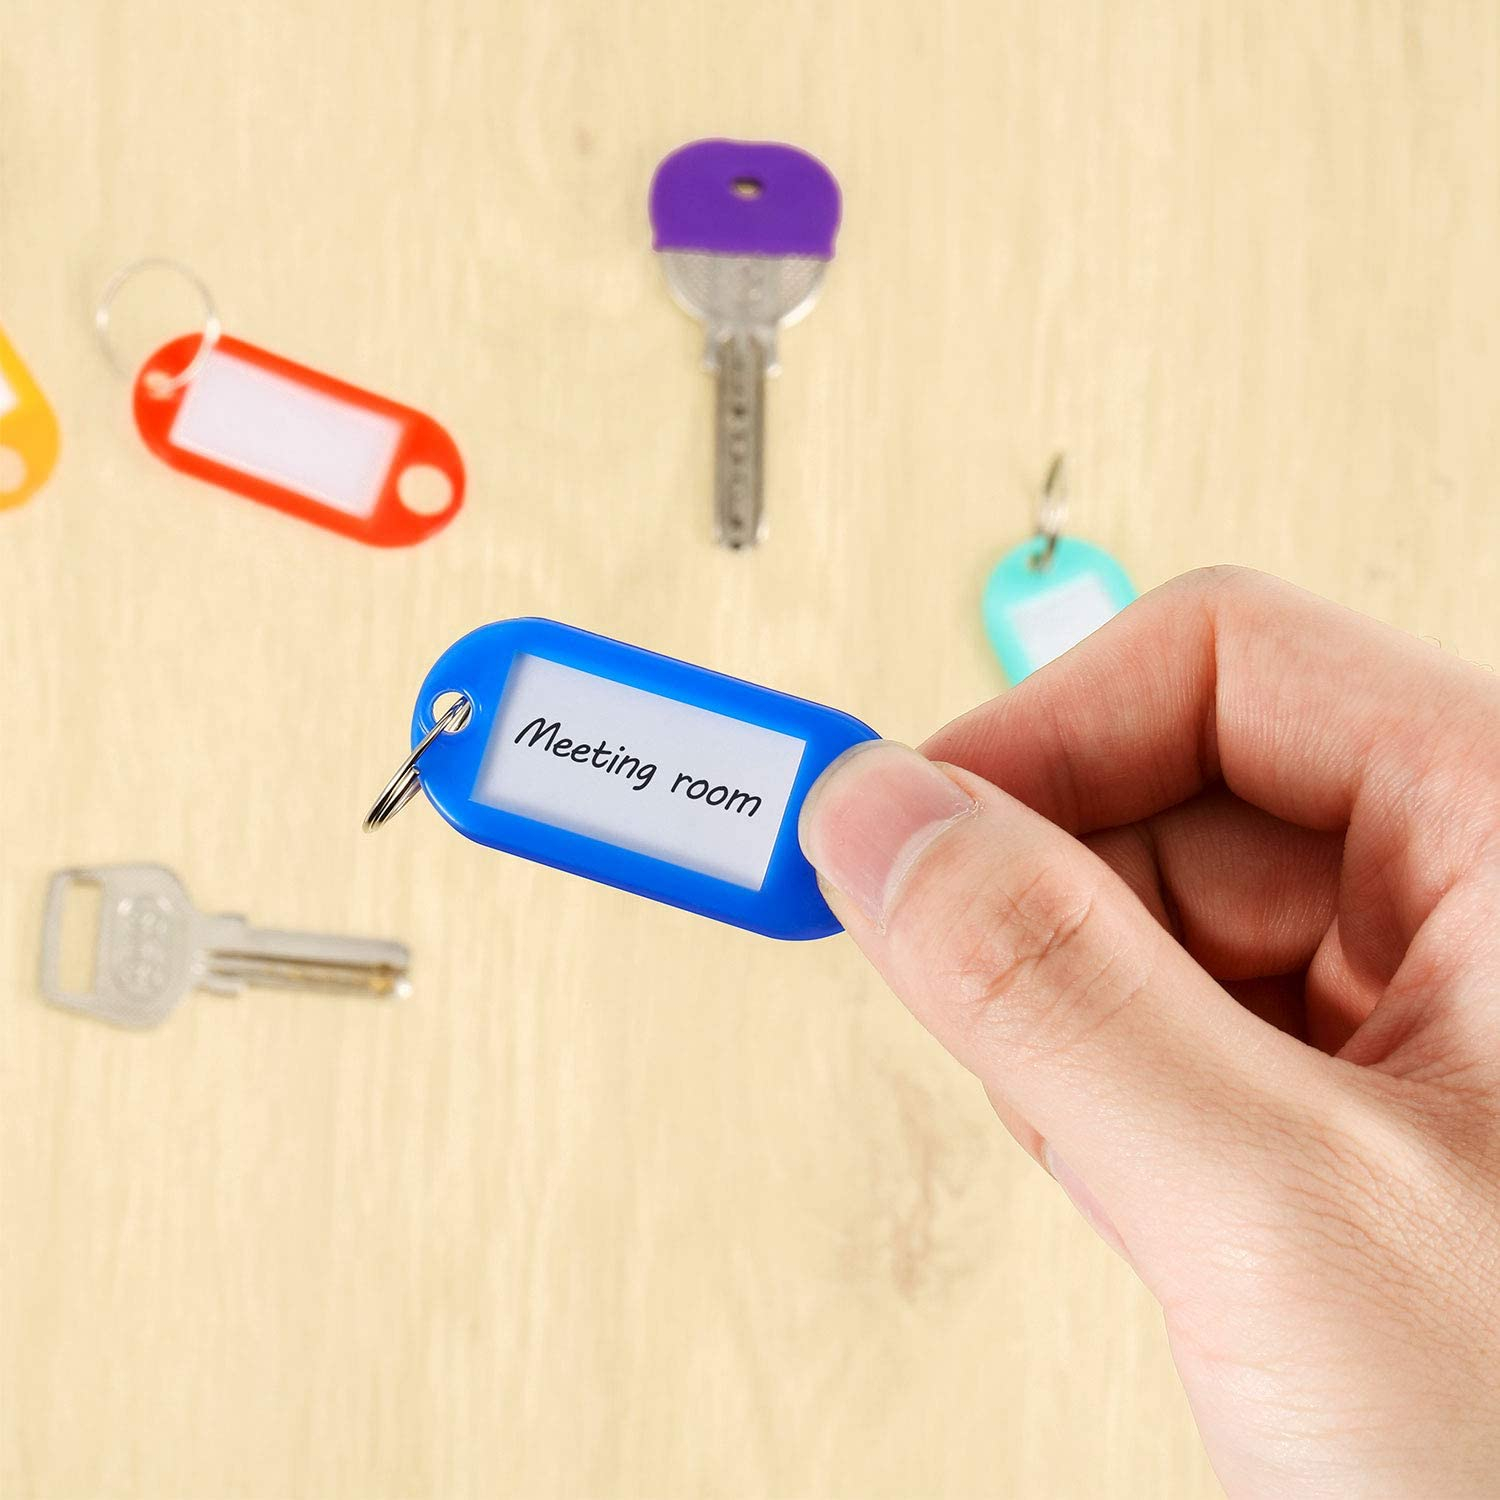 30 Stück Schlüsselkappen-Abdeckungen, Etiketten, Hausschlüsselabdeckungen,  farblich codierte Schlüssel-ID-Ringe, Schlüsselkappen-Schlüssel-Farbkennzeichnungsringe  in 10 verschiedenen Farben, perfektes Codierungssystem zum Markieren Ihrer  Schlüssel